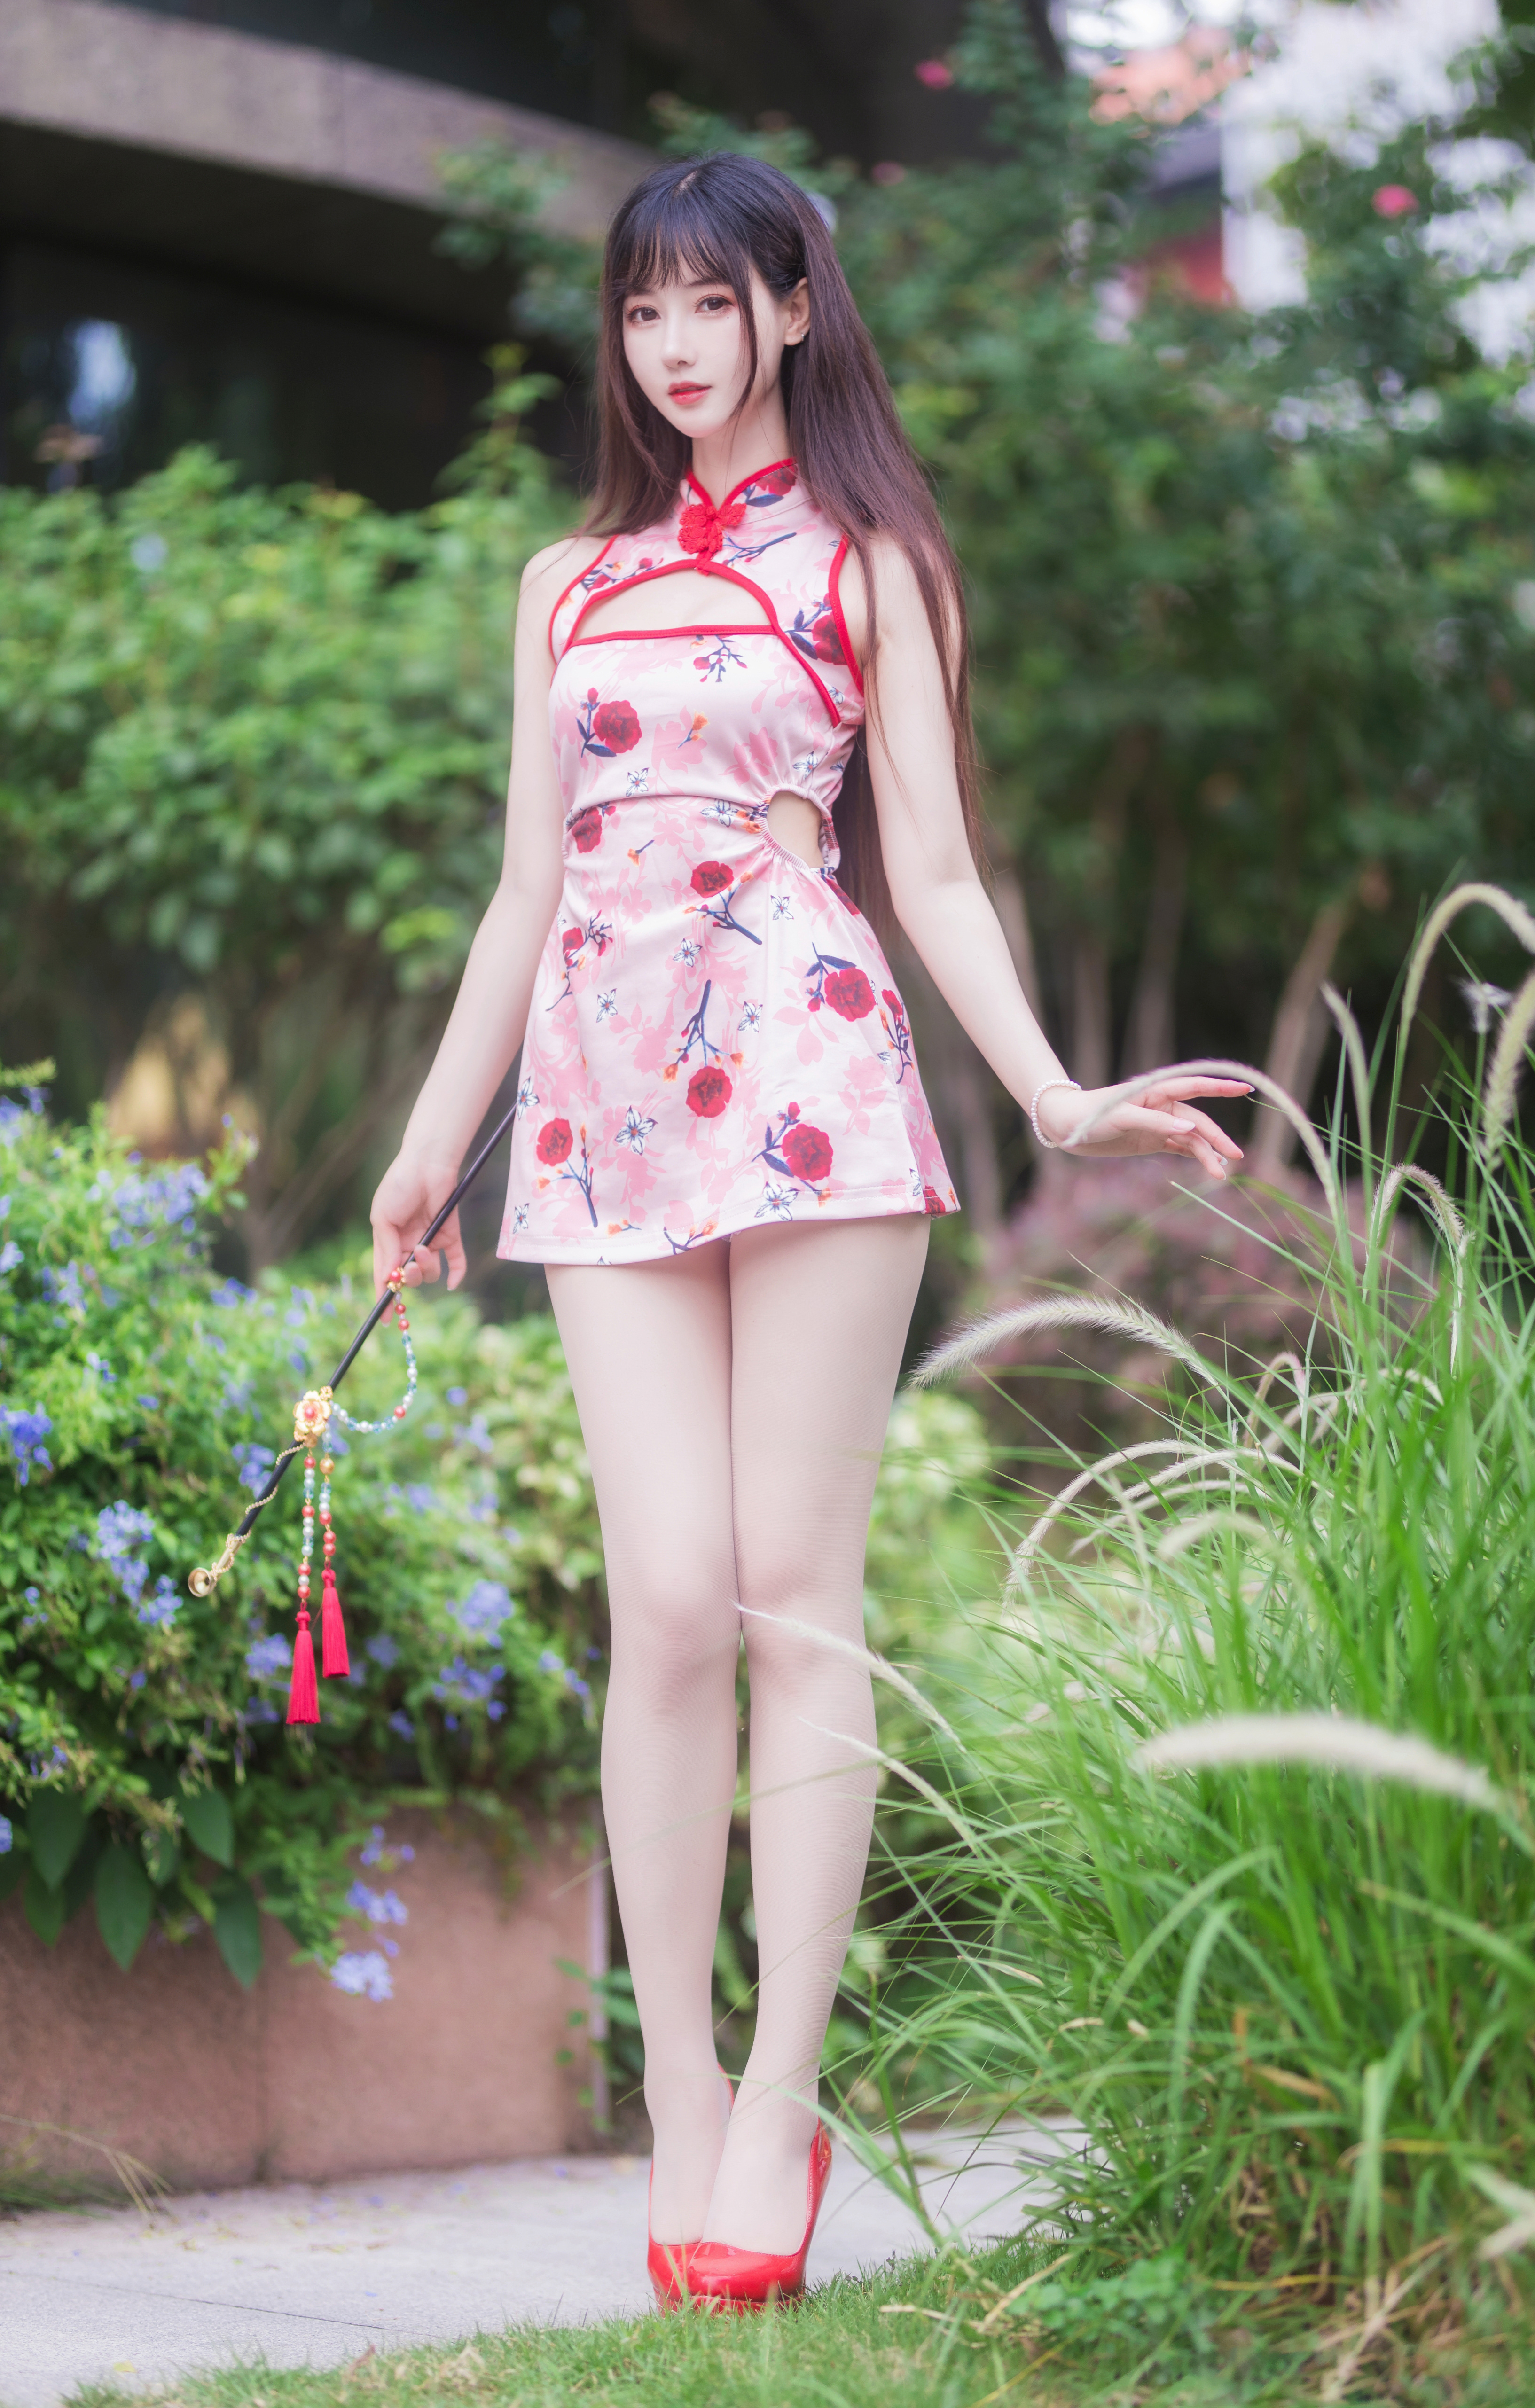 Asian Brunette High Heels Outdoors Cheongsam 3266x5124